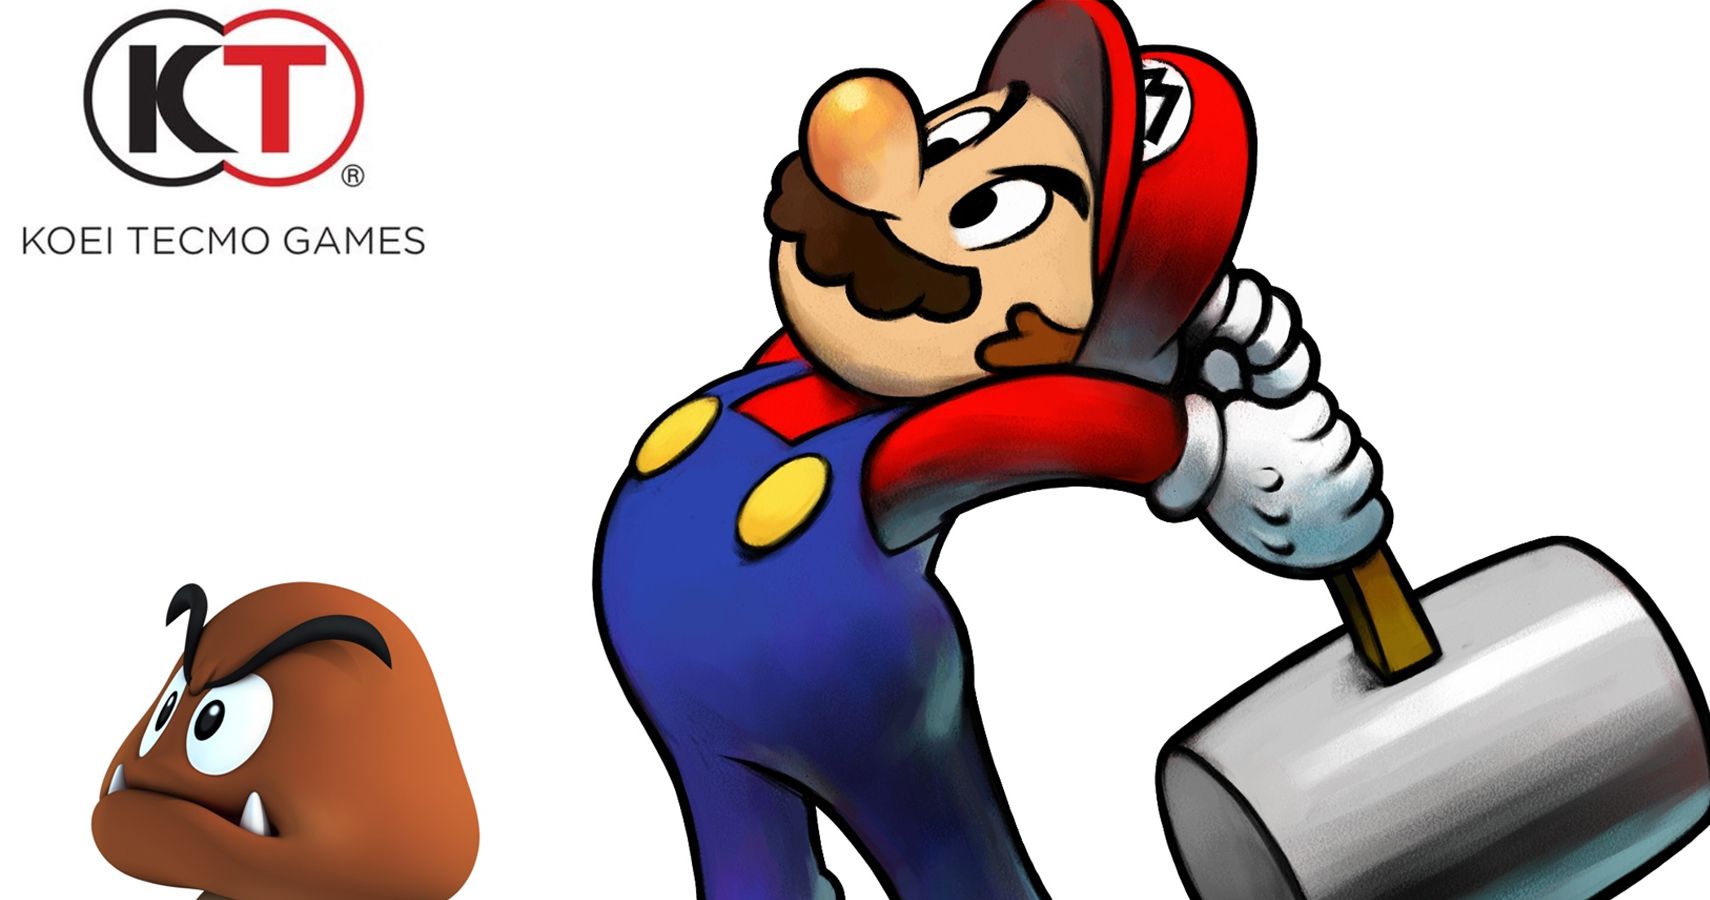 Koei Tecmo Wants To Make A Mario Game